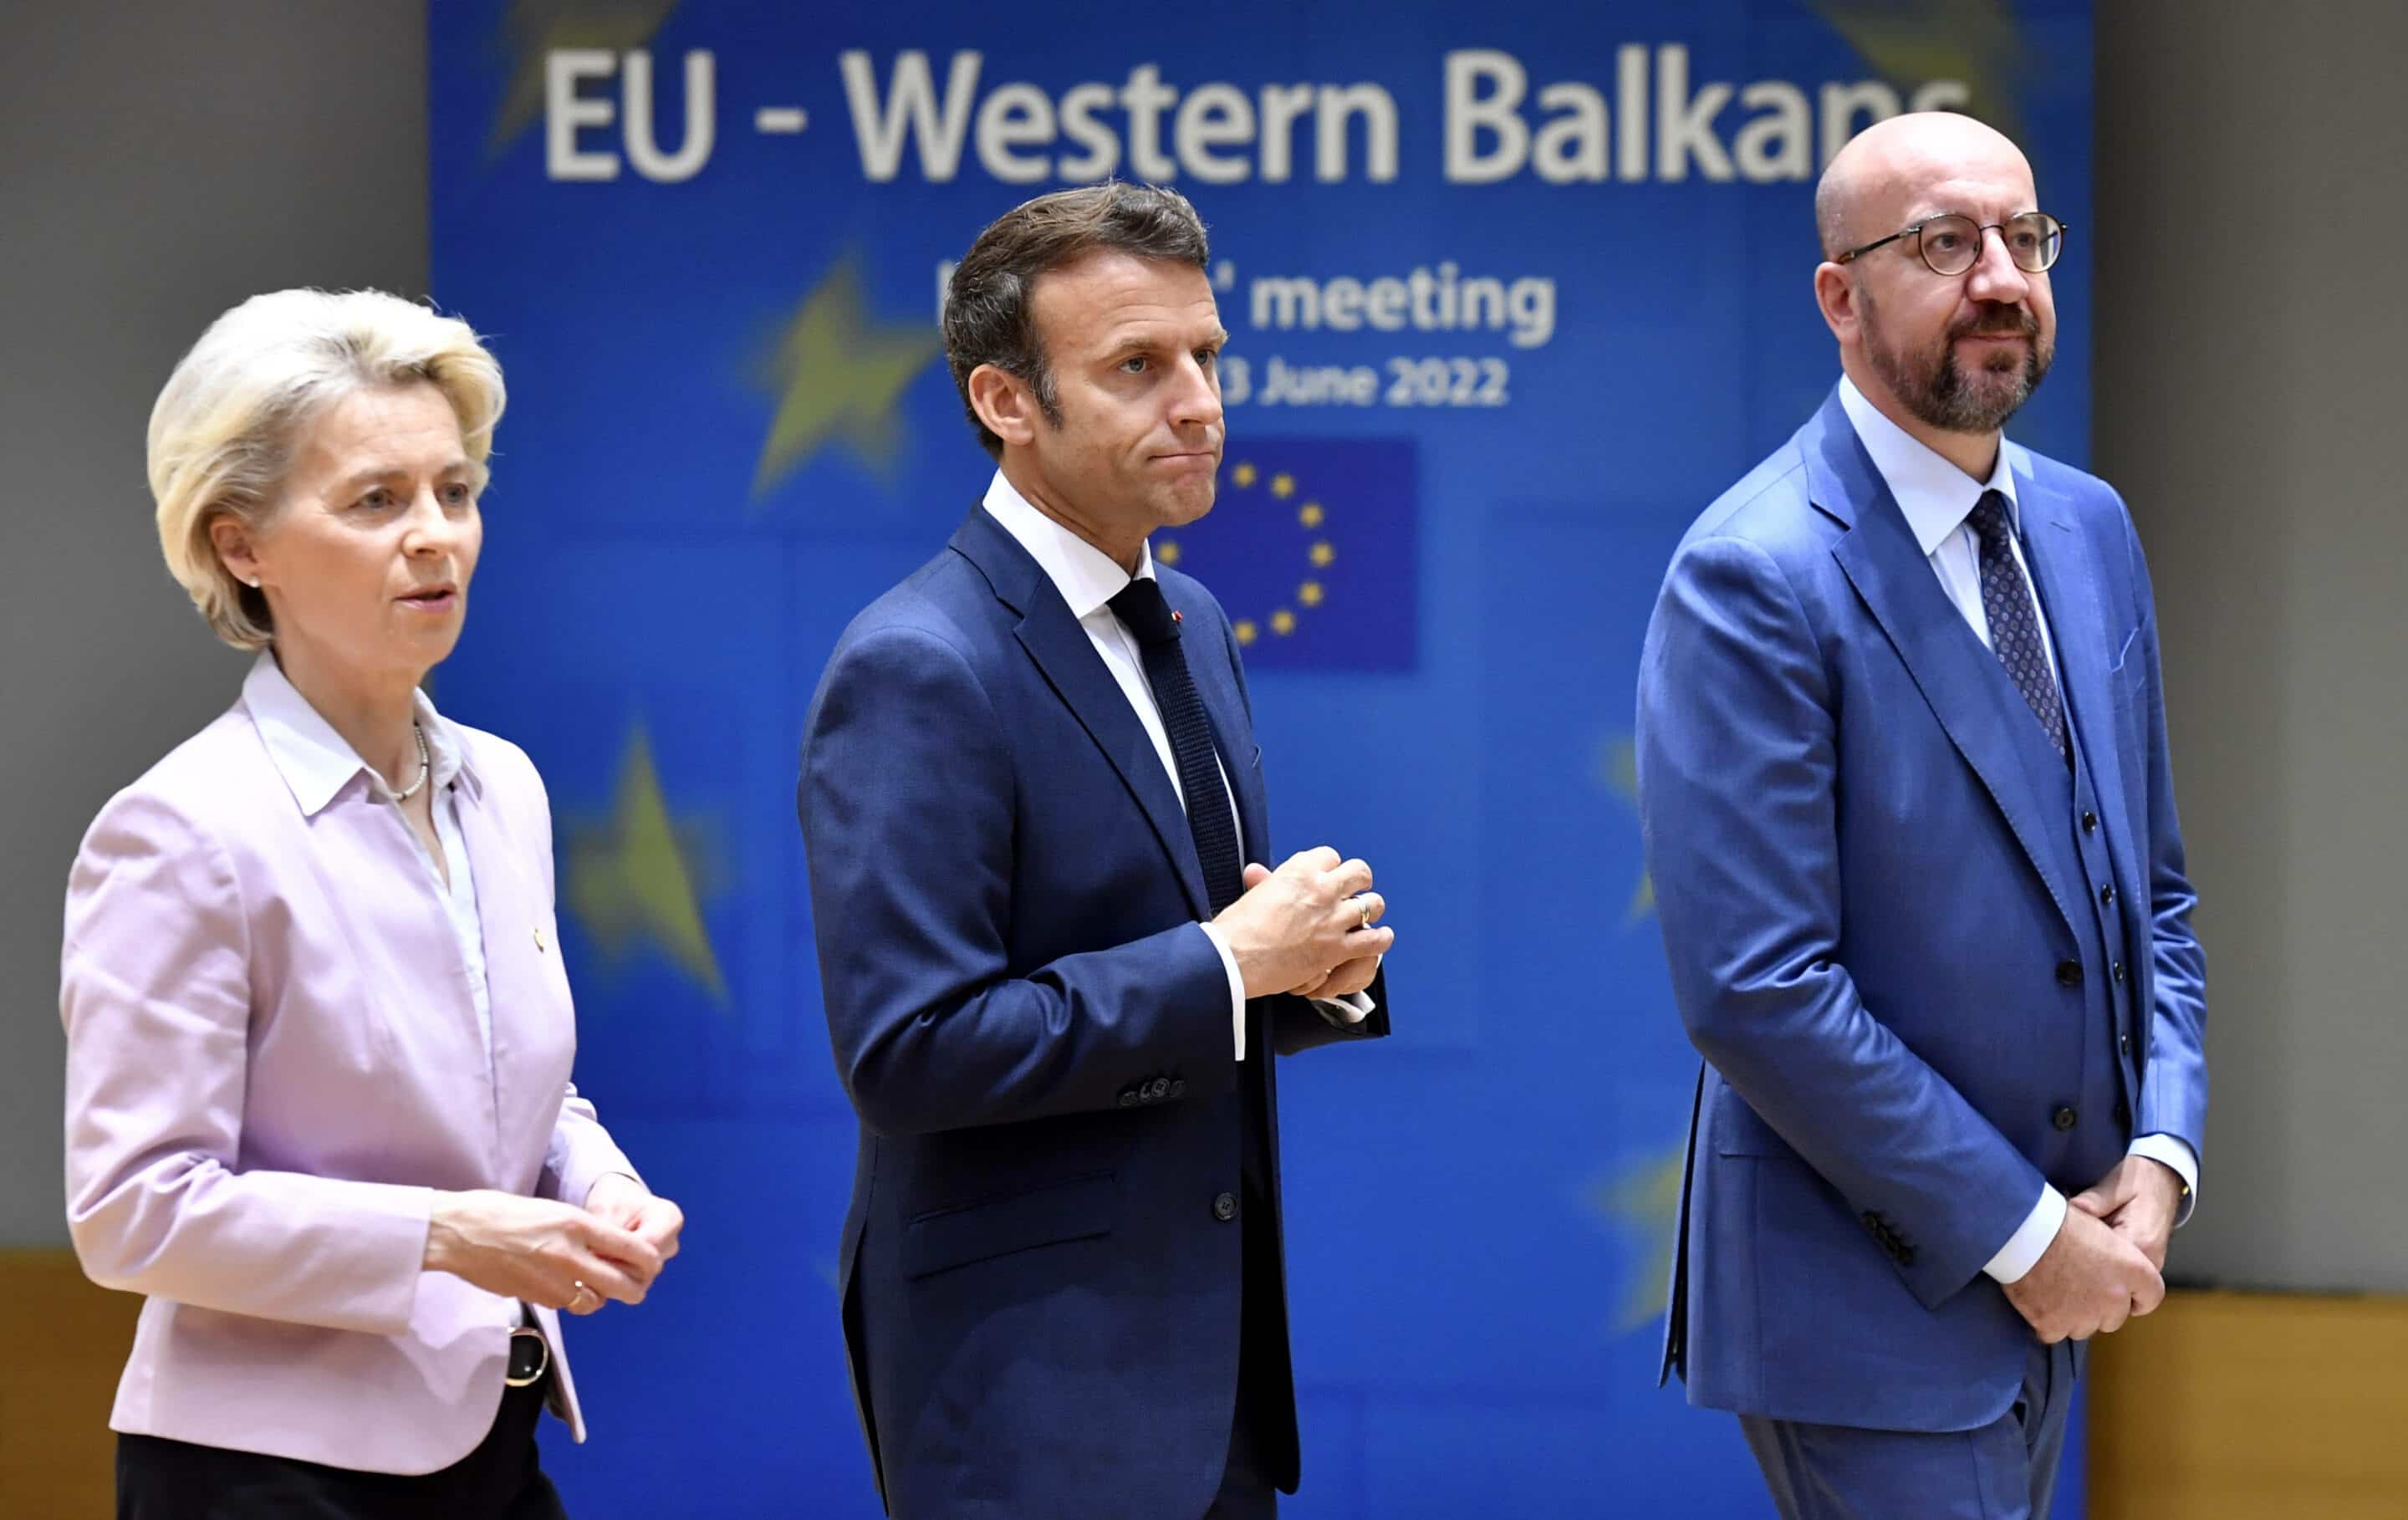 La présidente de la Commission européenne Ursula von der Leyen, à gauche, le président français Emmanuel Macron, au centre, et le président du Conseil européen Charles Michel, à droite, arrivent pour une table ronde lors d'un sommet de l'UE à Bruxelles, jeudi 23 juin 2022.
Geert Vanden Wijngaert/AP/SIPA